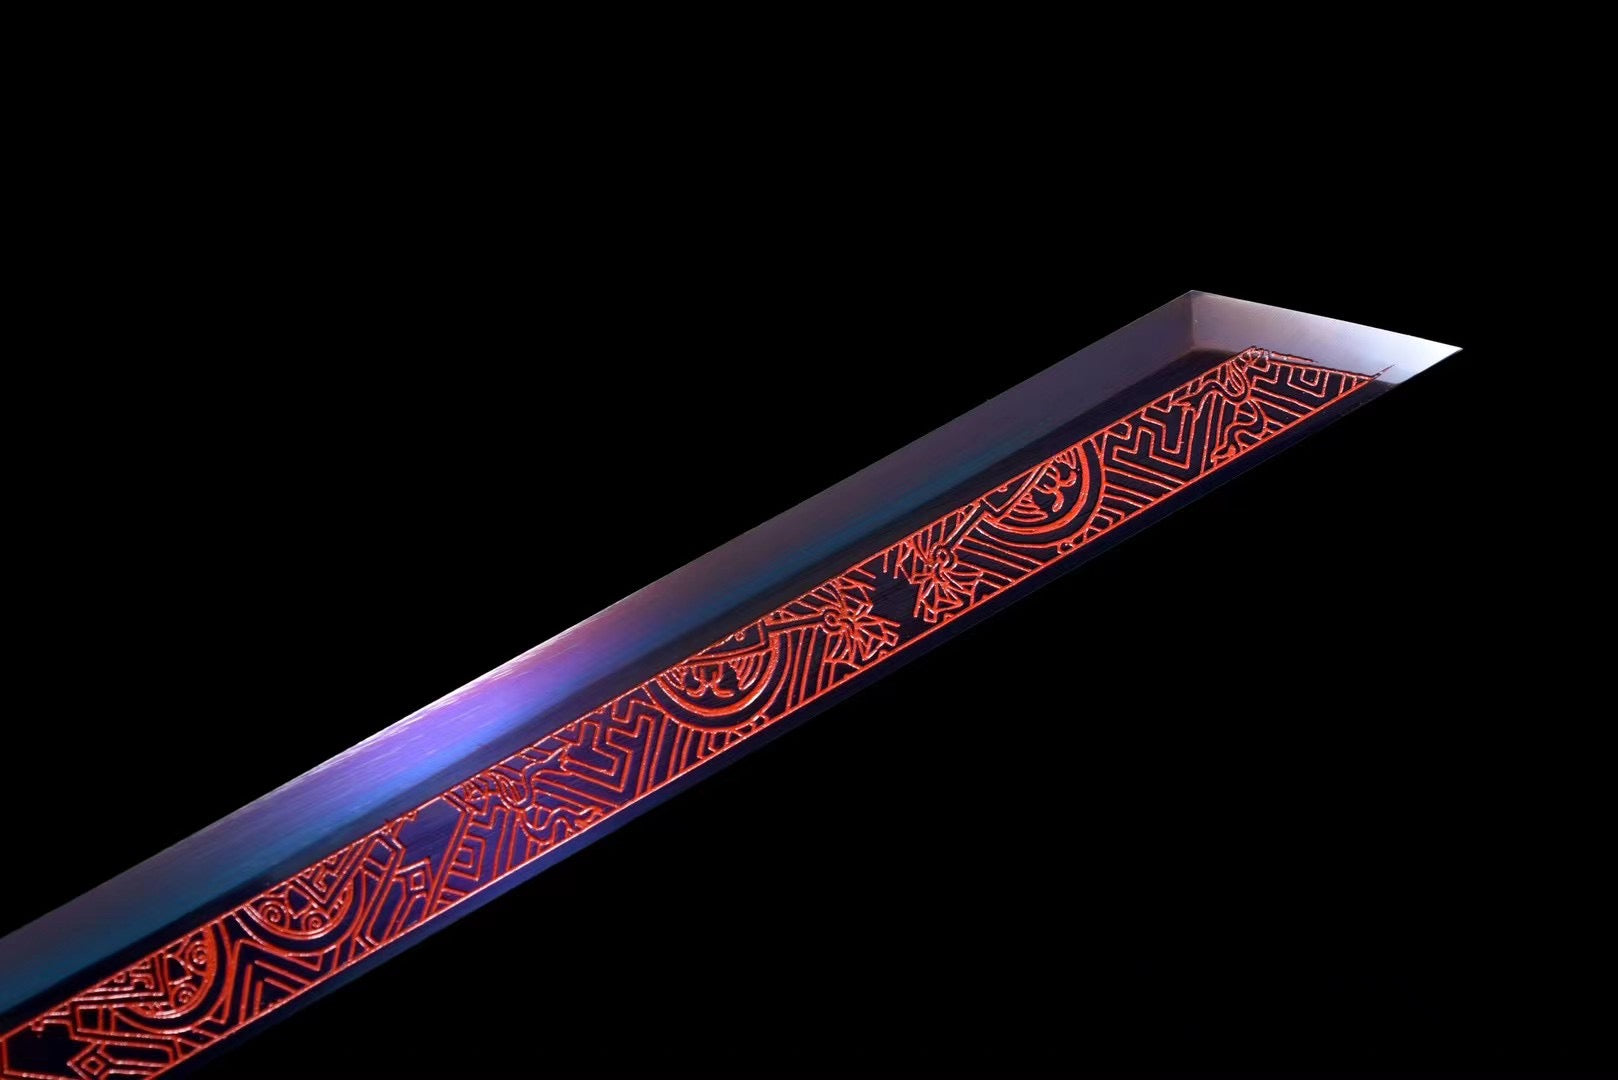 Antikes Schwert aus Schwarzgold, chinesisches Tang-Schwert, Tang-Horizontal-Schwert, Hochmanganstahl